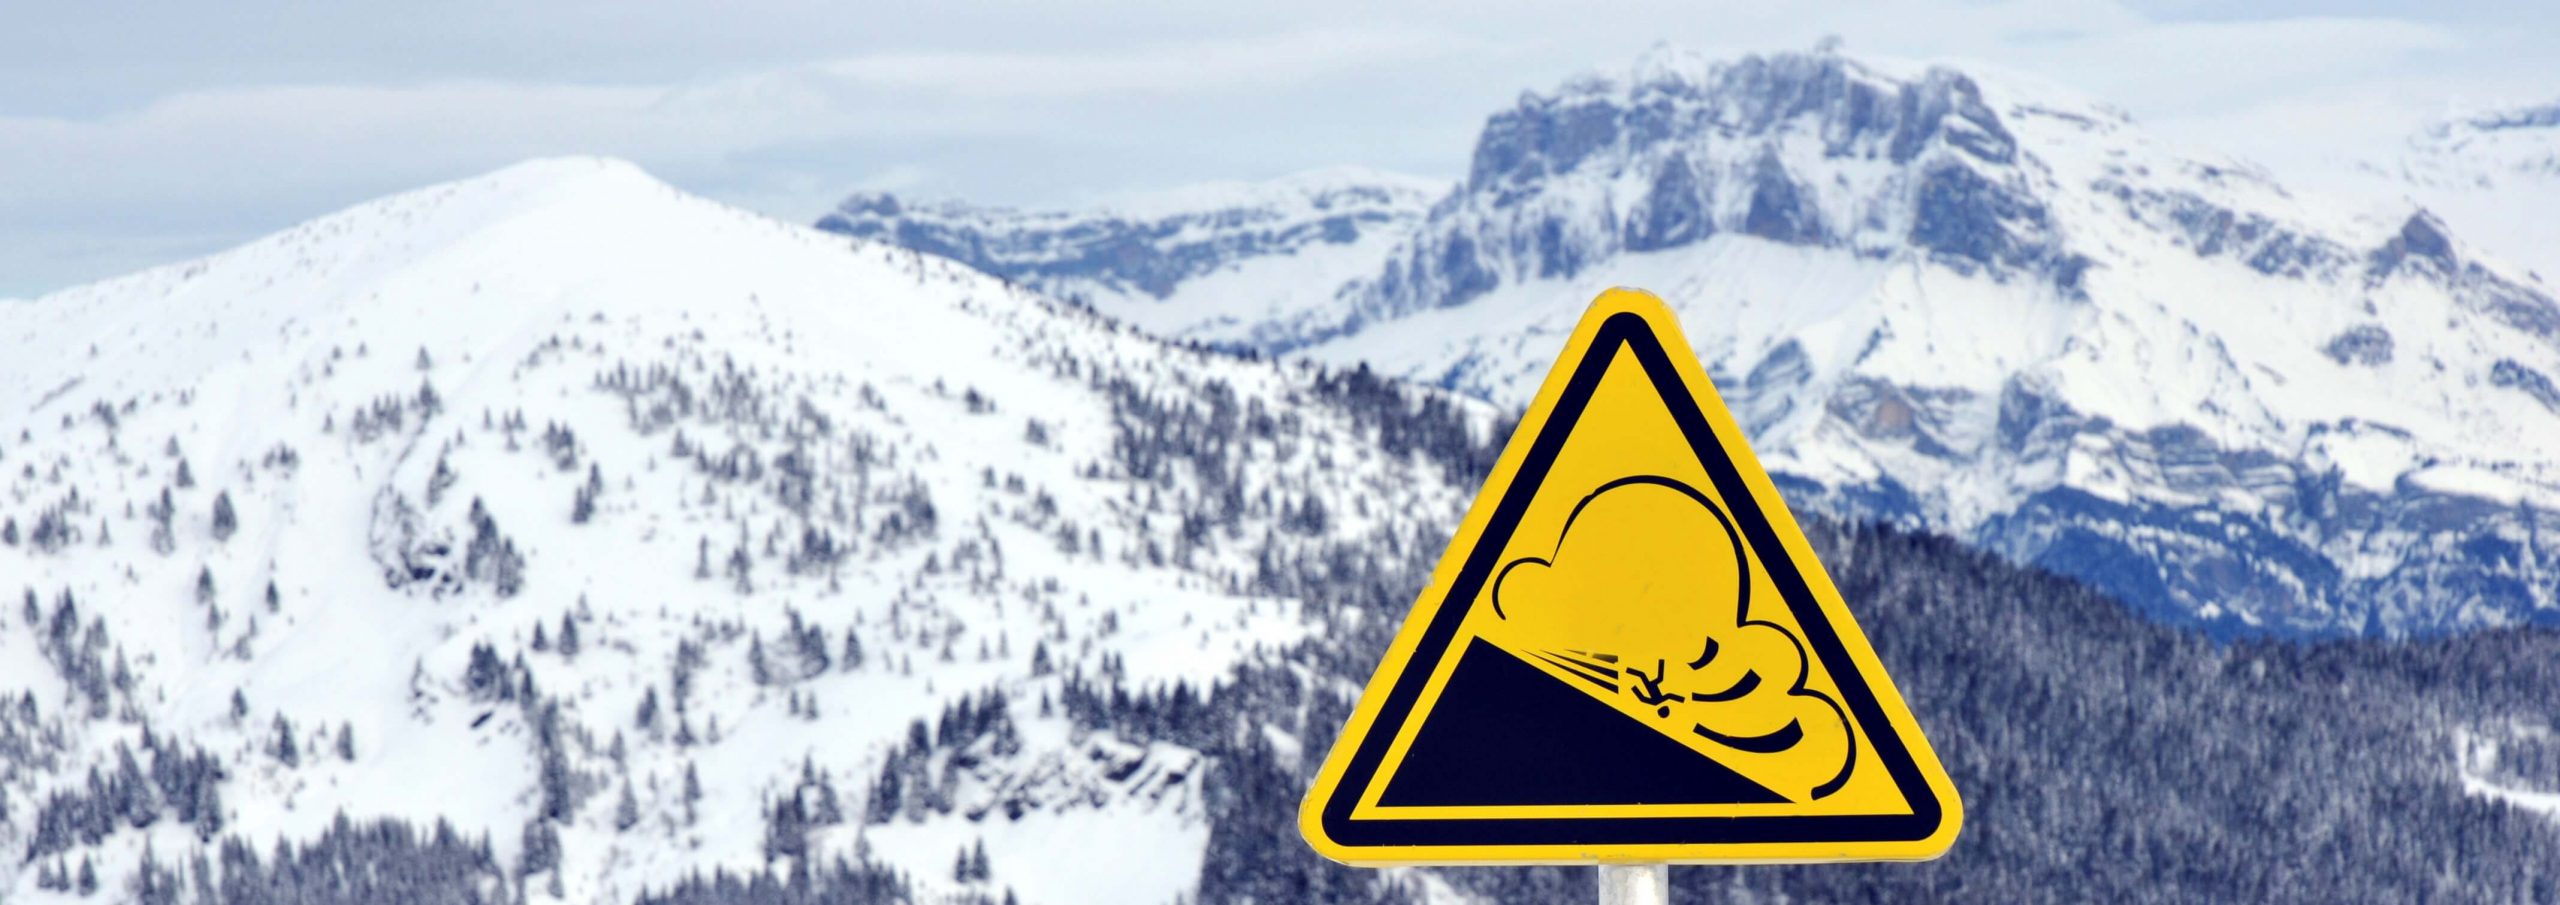 Lawinene-Warnschild mit Bergen im Hintergrund